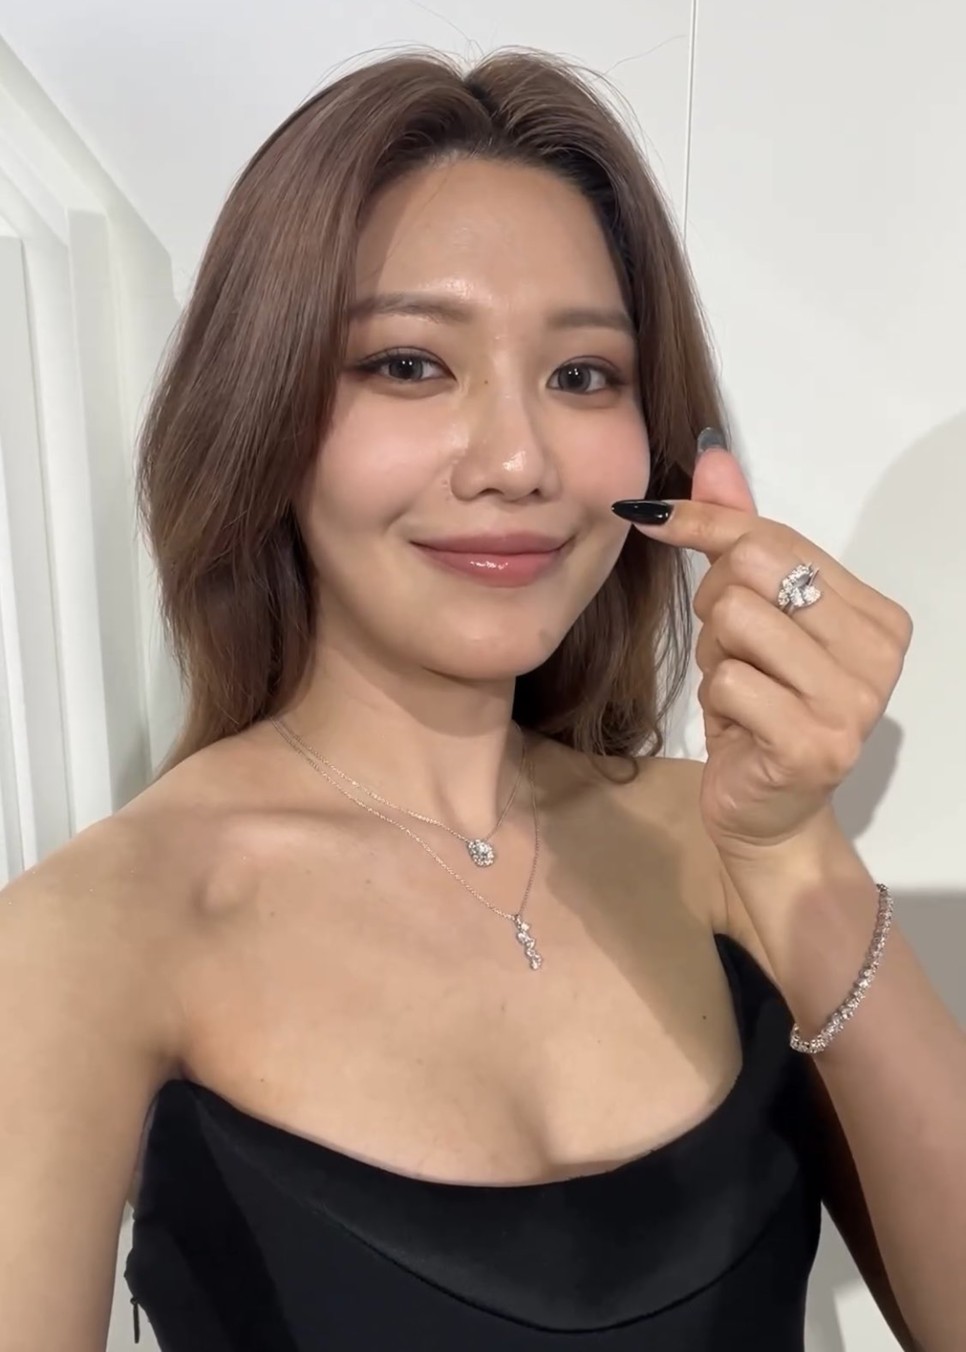 홍콩 난리 난 소녀시대 수영 랩 다이아몬드 스와로브스키 목걸이 가격은?